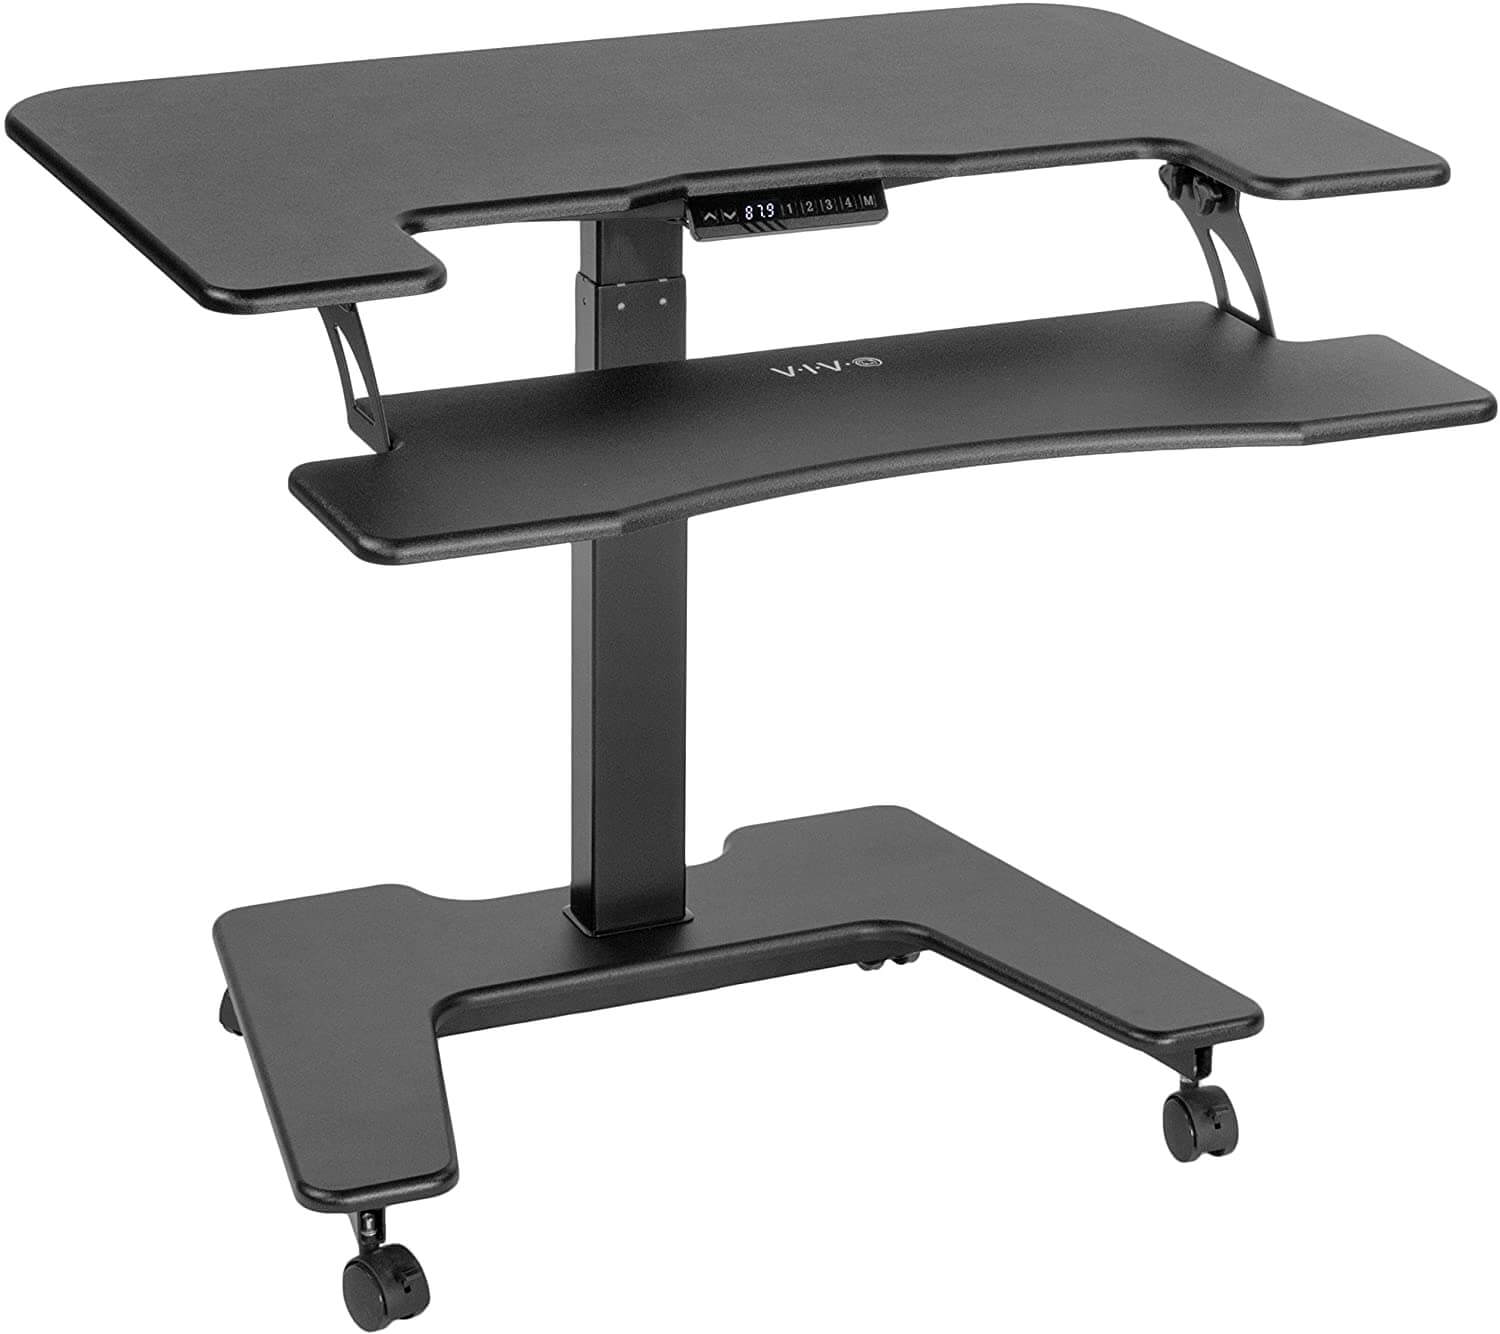 Adjustable standing desk for back pain